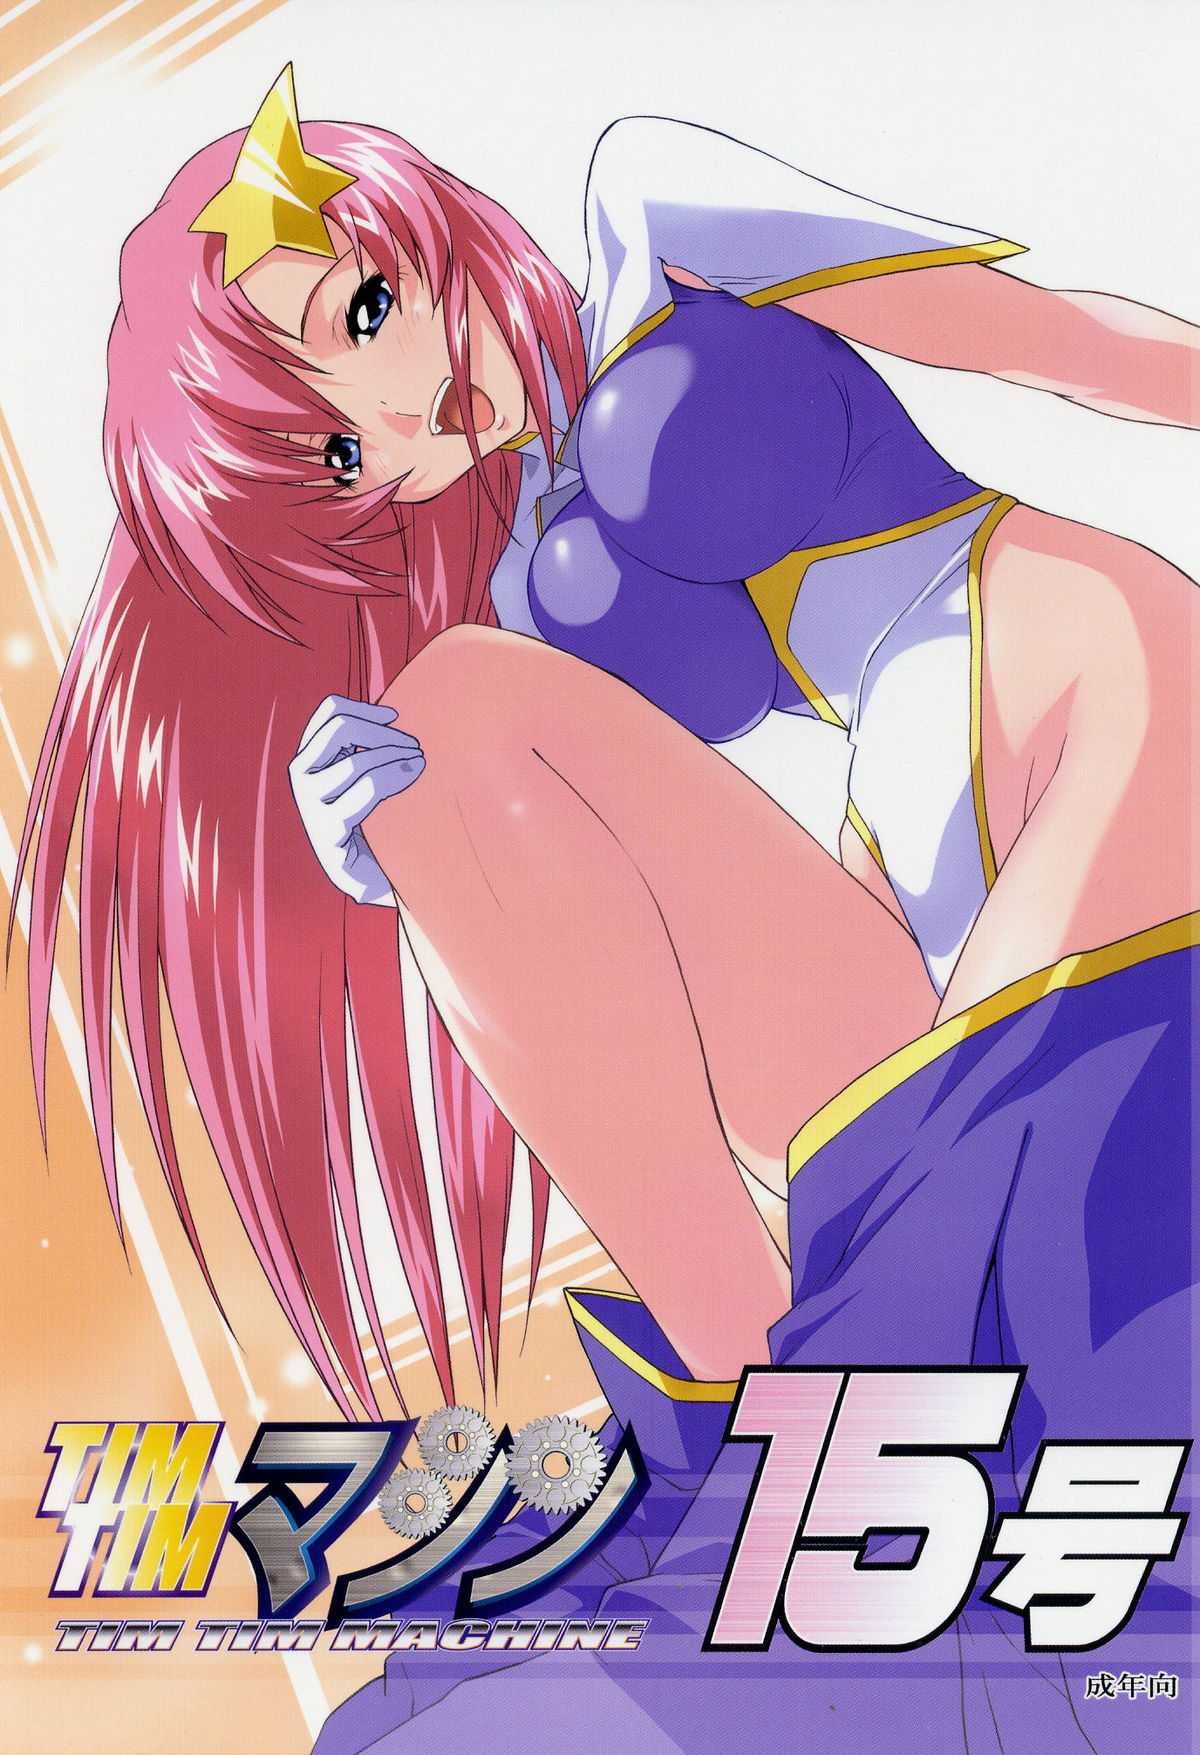 [TimTim Machine] TimTim Machine 15 (Gundam Seed Destiny) 